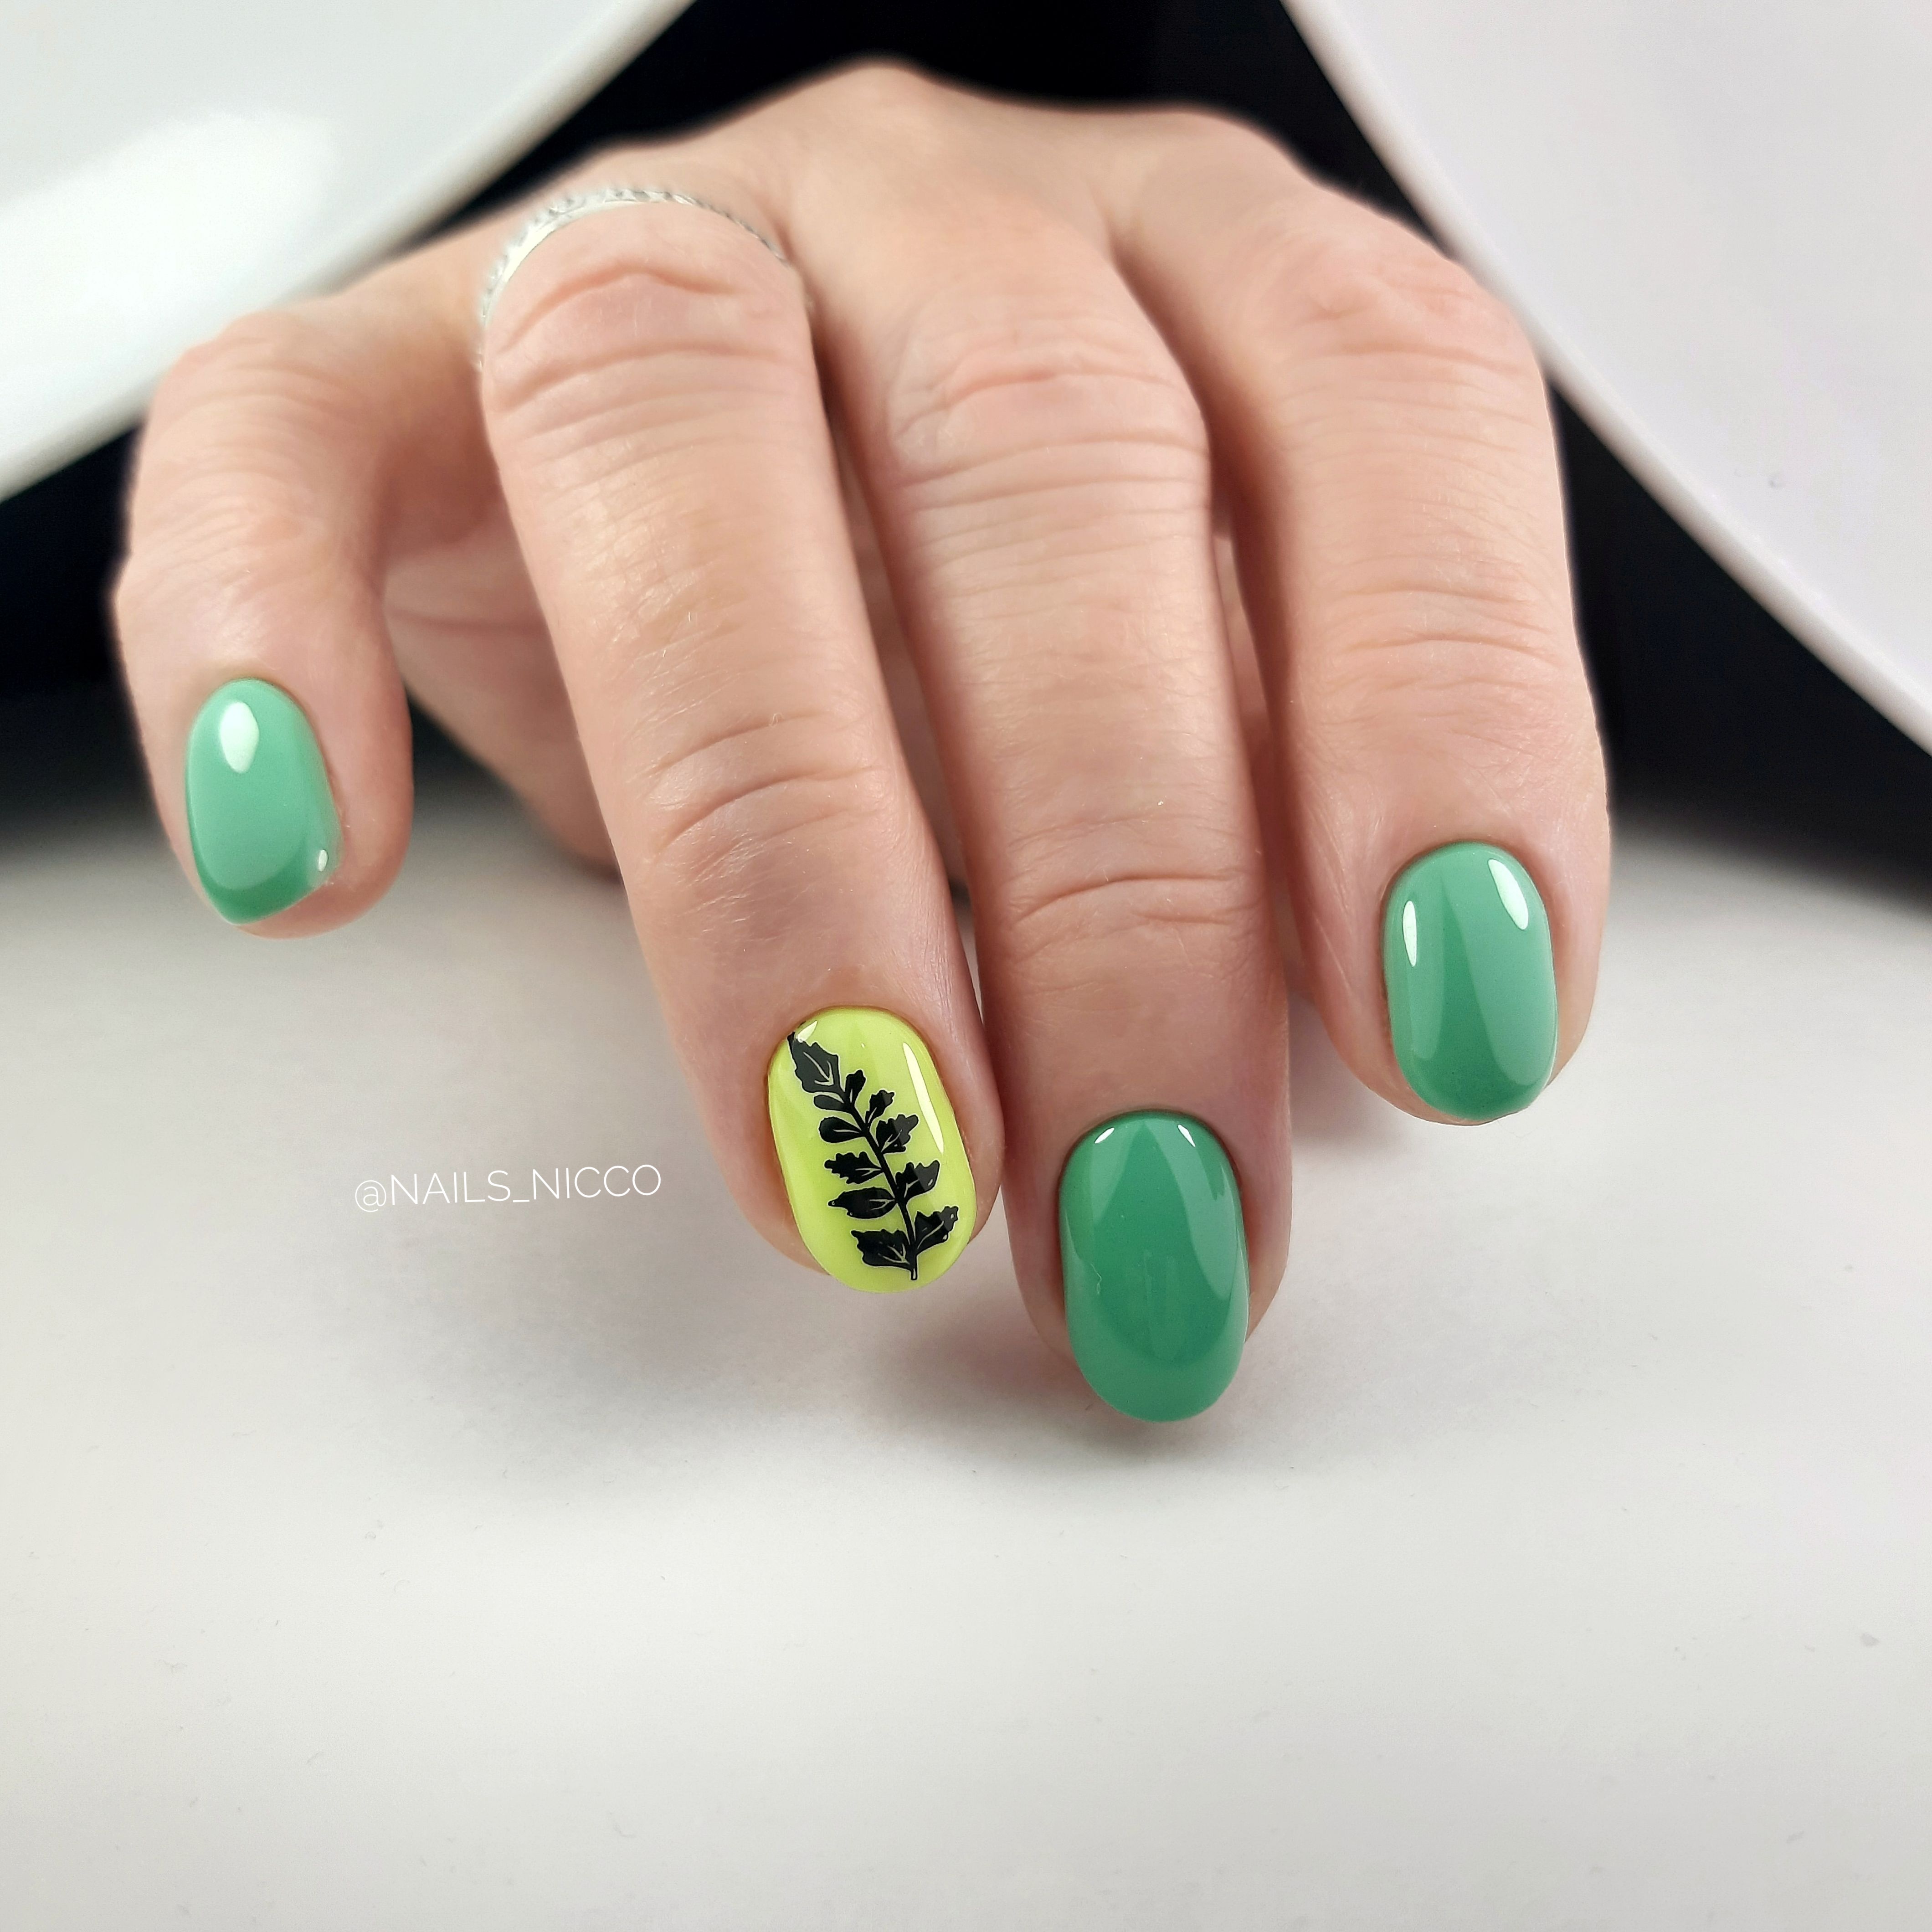 Маникюр с растительным слайдером в зеленом цвете на короткие ногти.